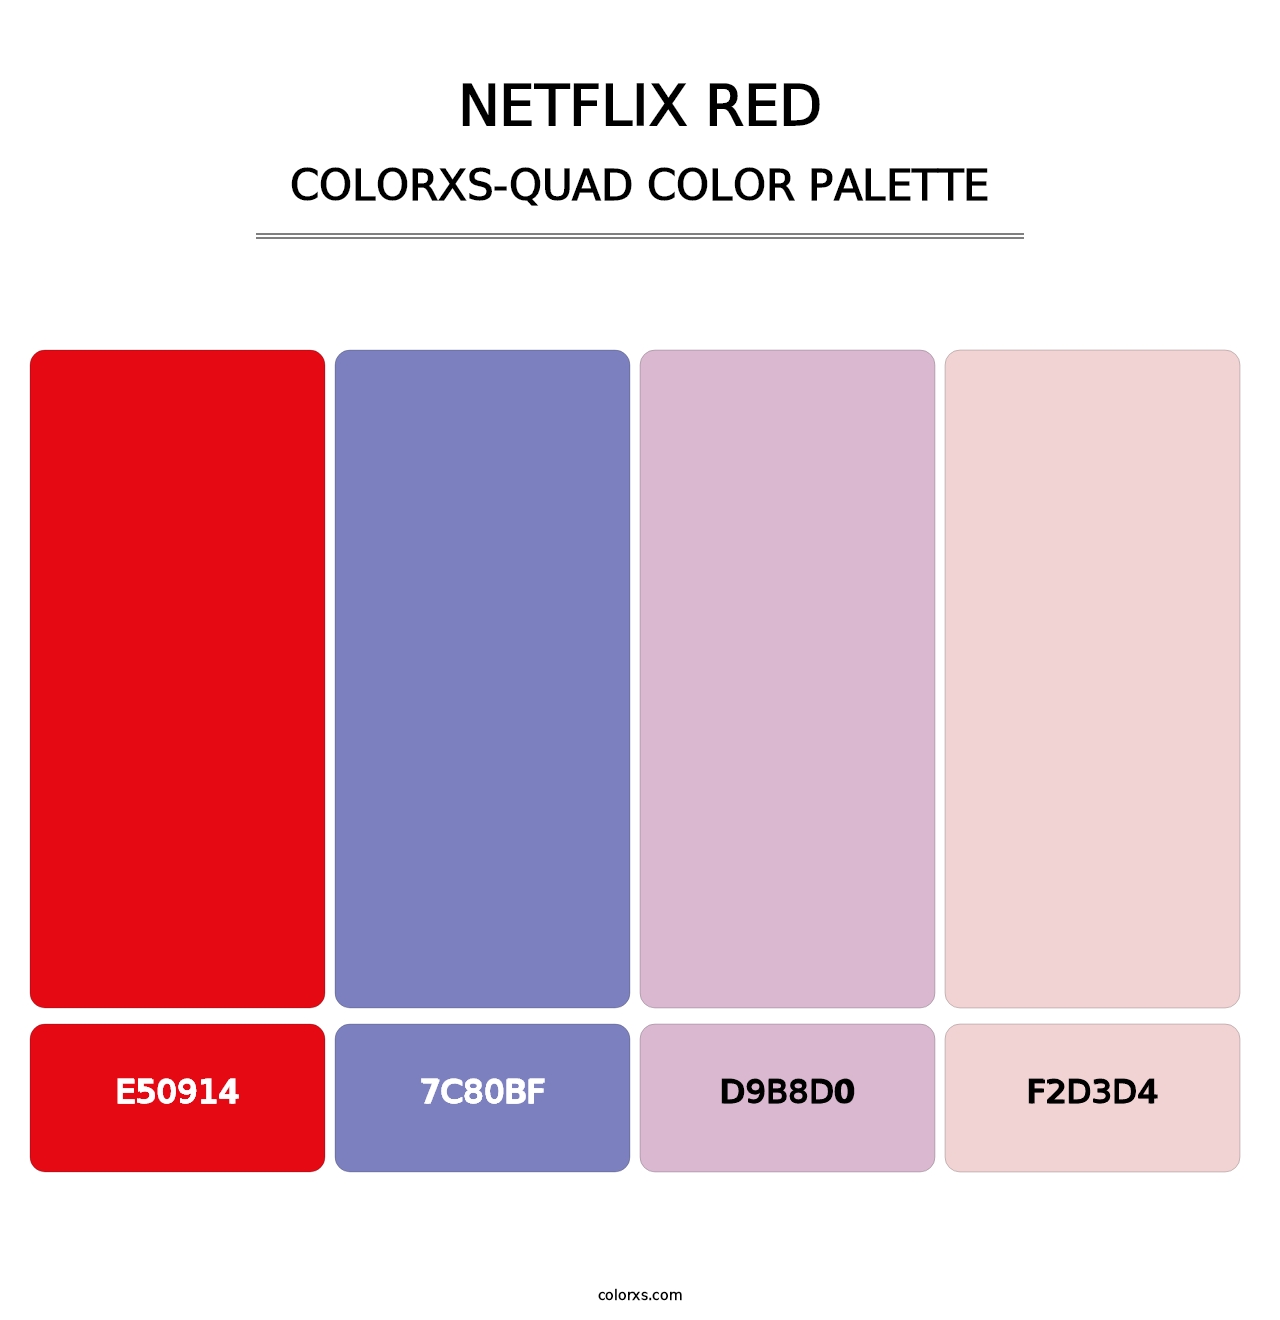 Netflix Red - Colorxs Quad Palette